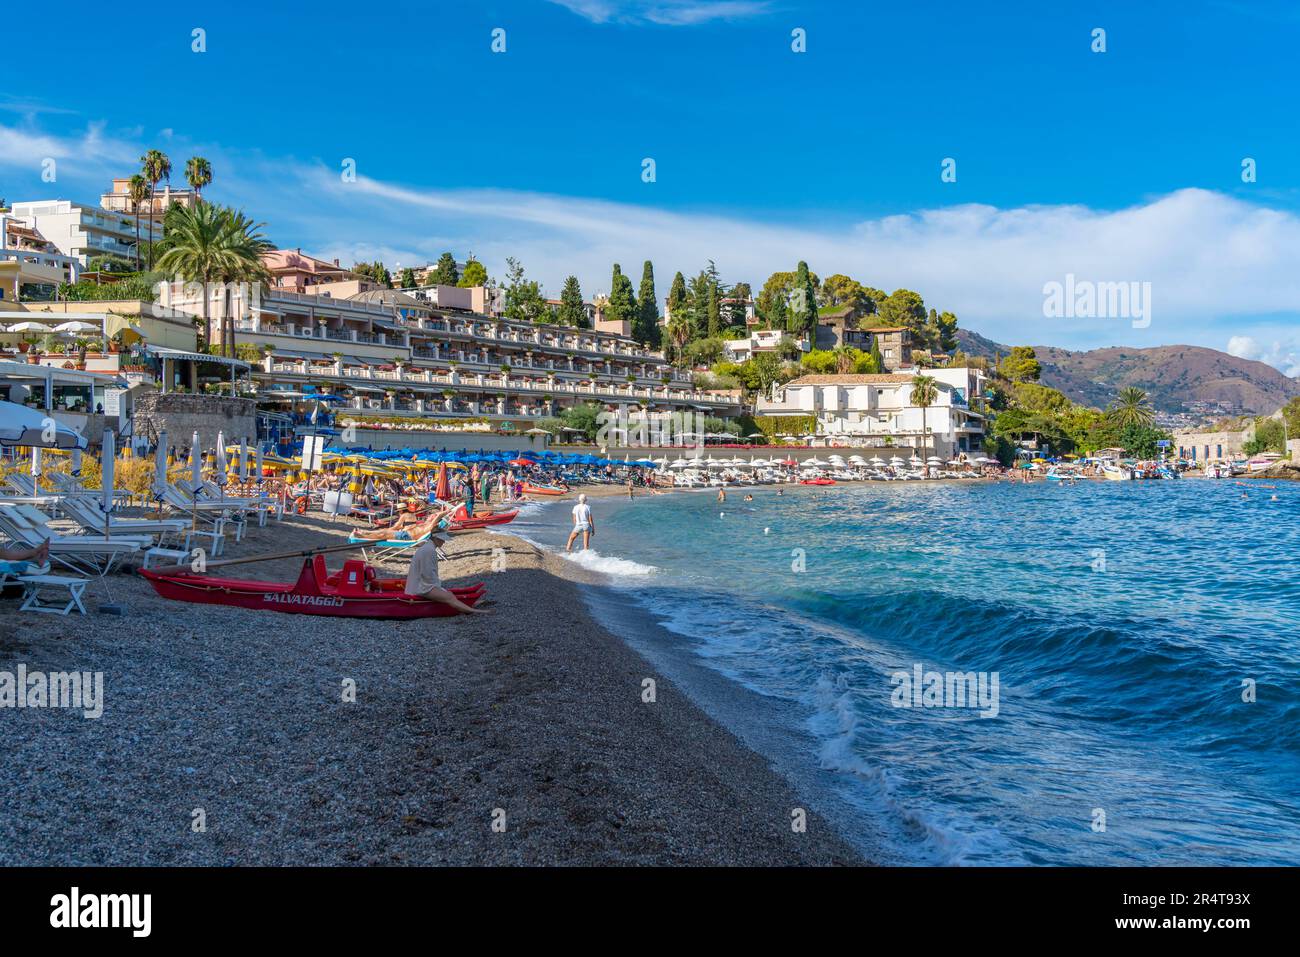 Vue sur la plage de Mazzaro par beau temps, Mazzaro, Taormina, Sicile, Italie, Europe Banque D'Images